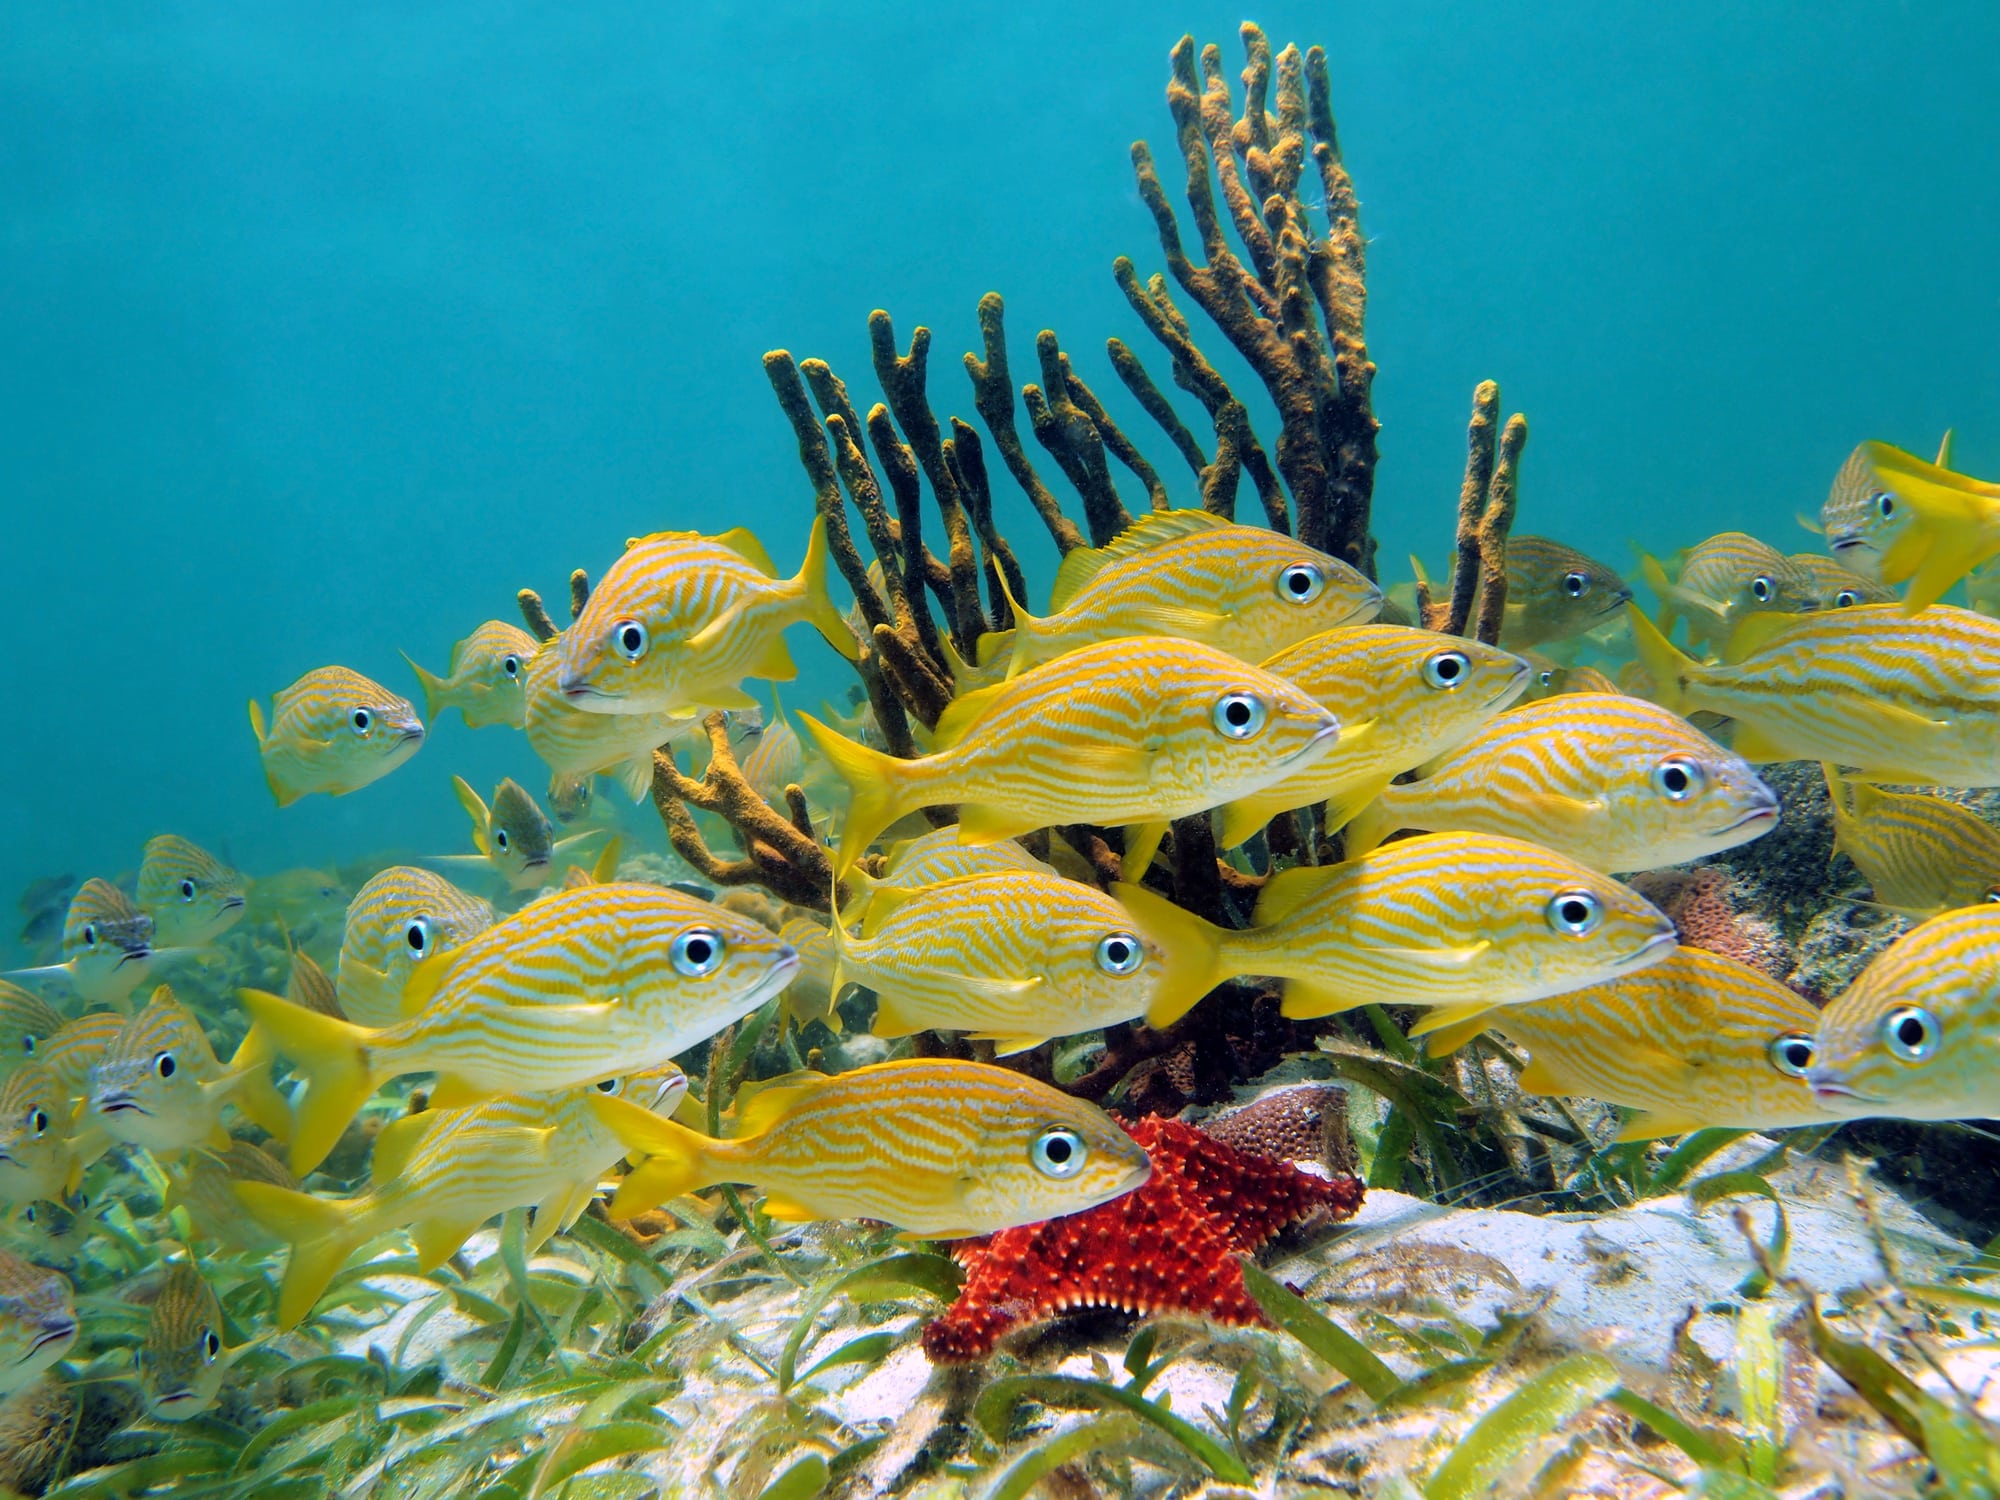 egzotyczne ryby pływające w przezroczystej wodzie